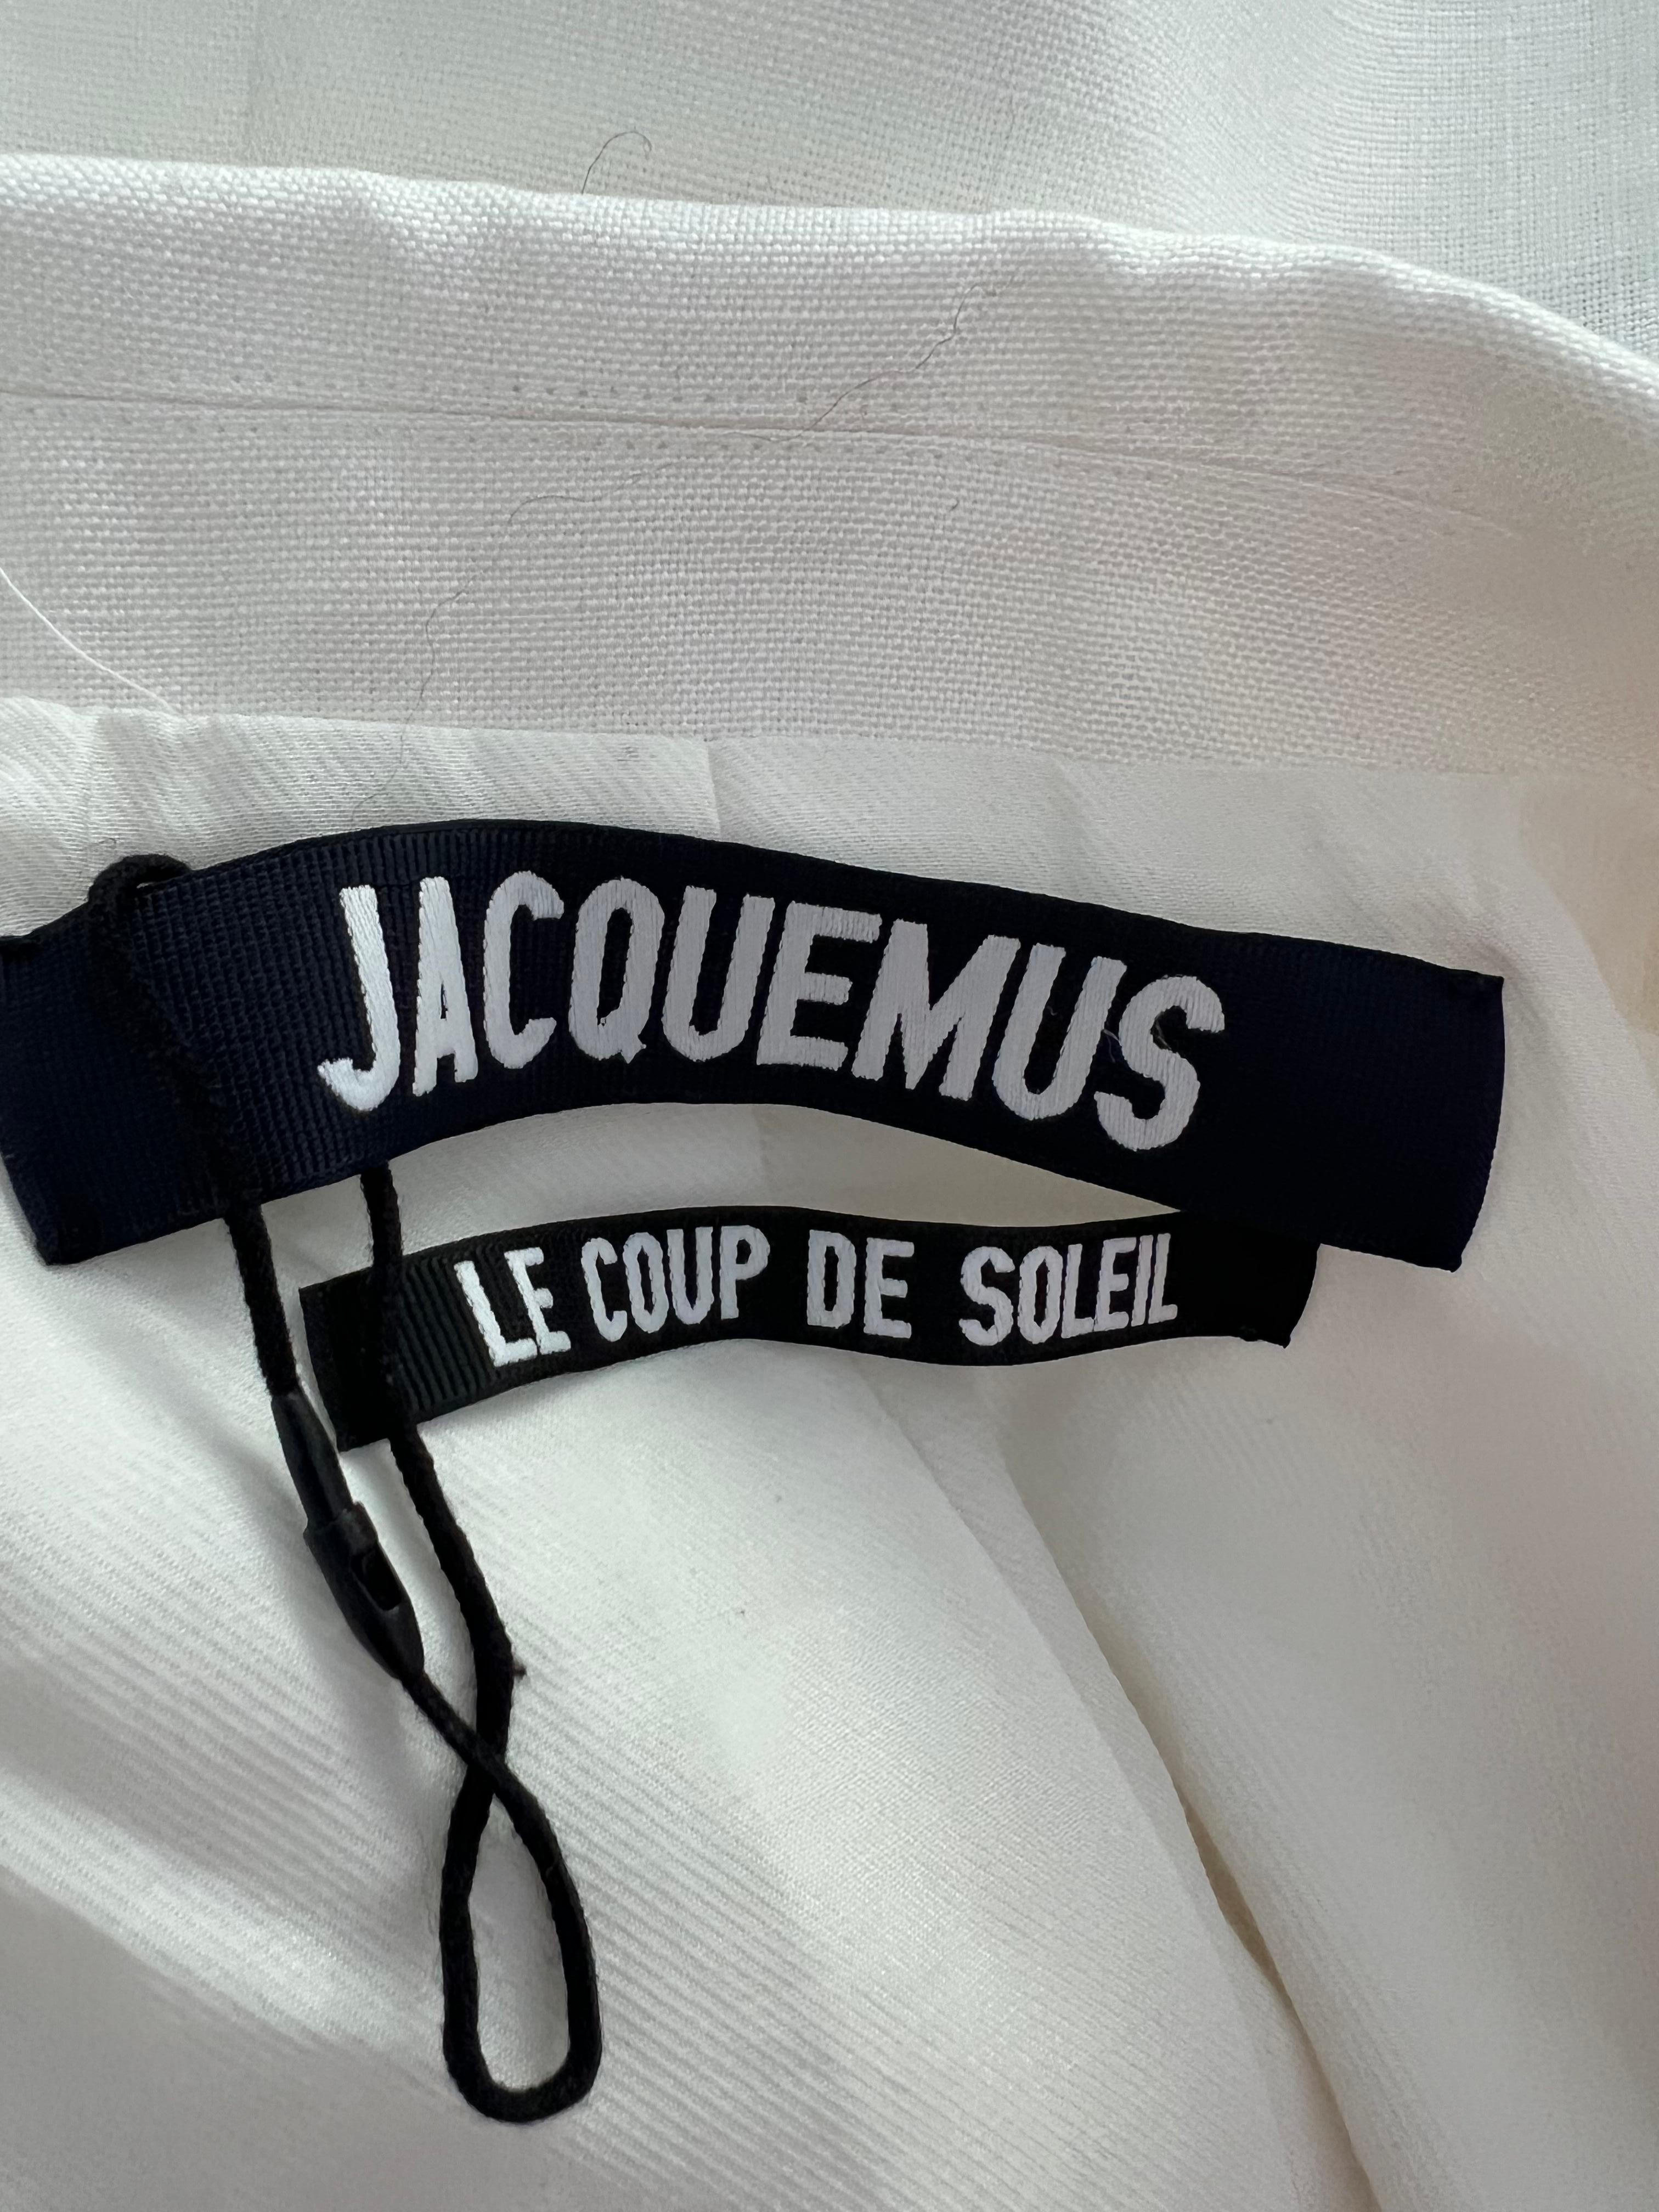 Jacquemus Le Coup De Soleil White Blazer Jacket, Size 38 For Sale 2